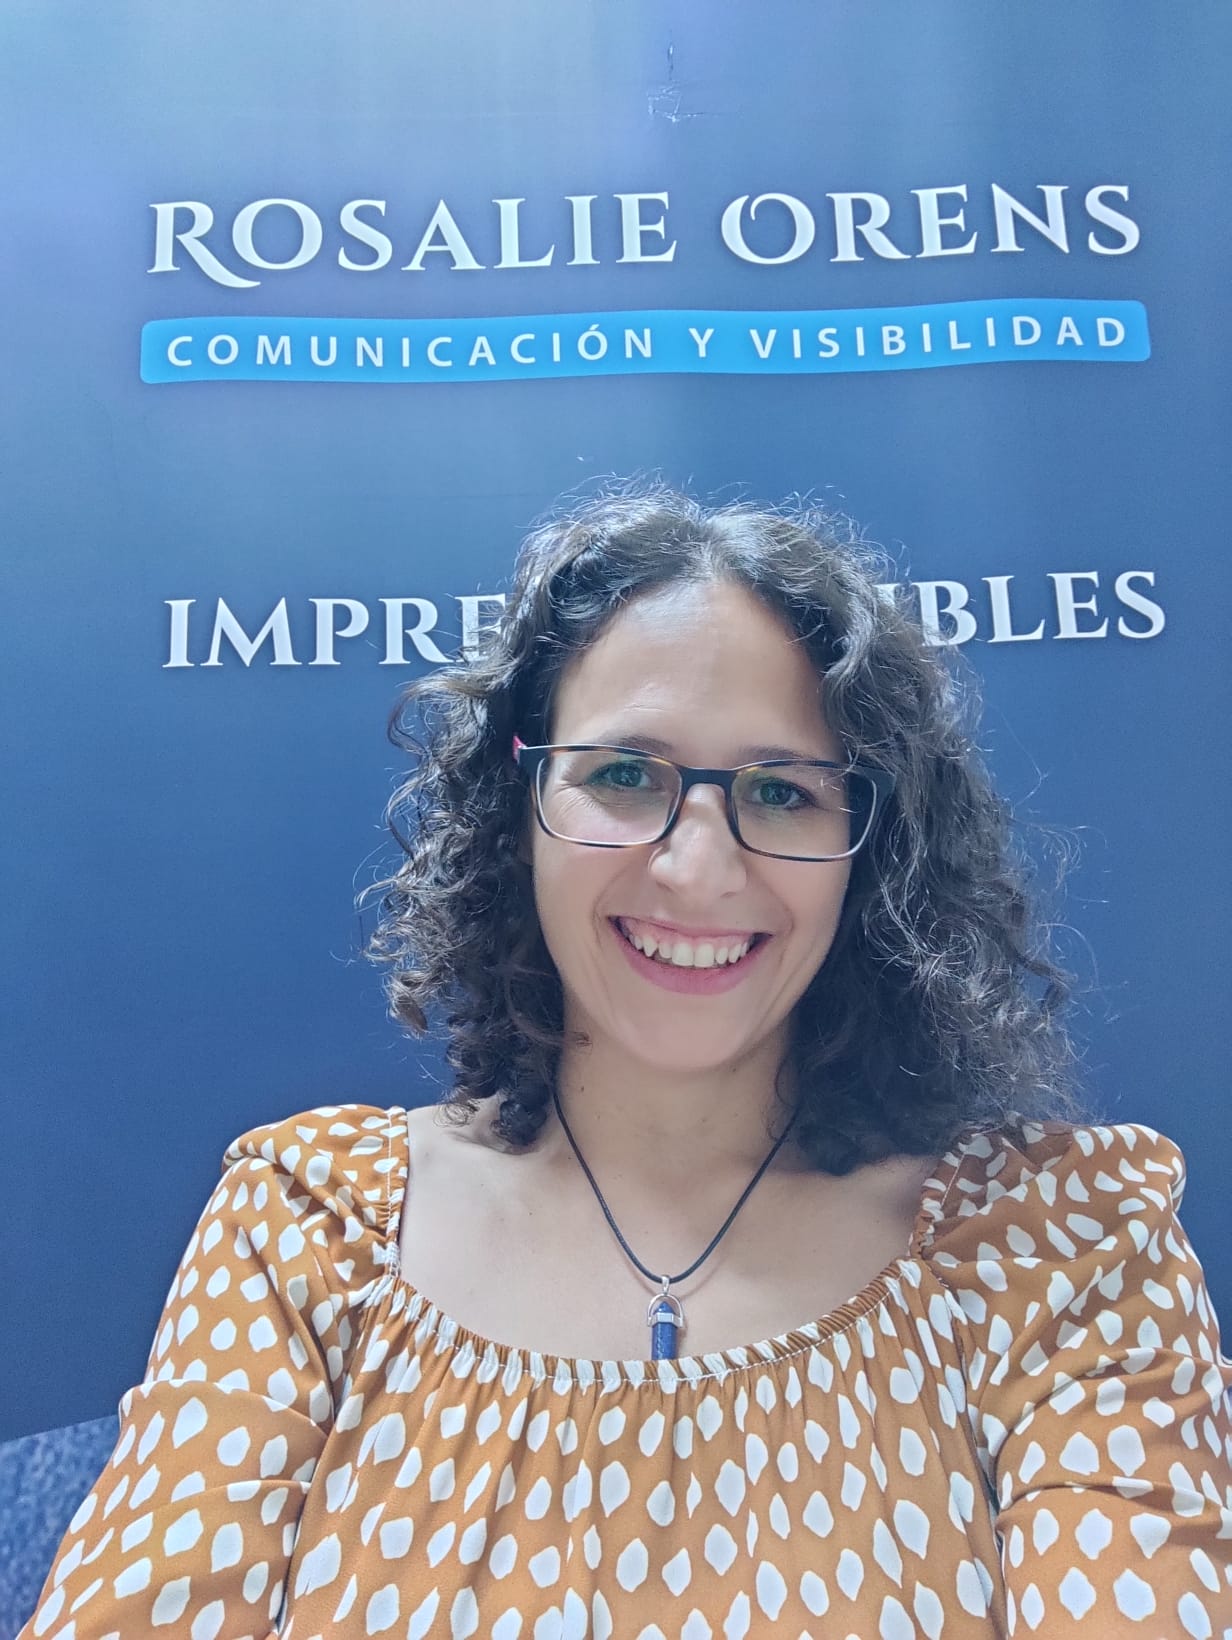 Rosalie Orens